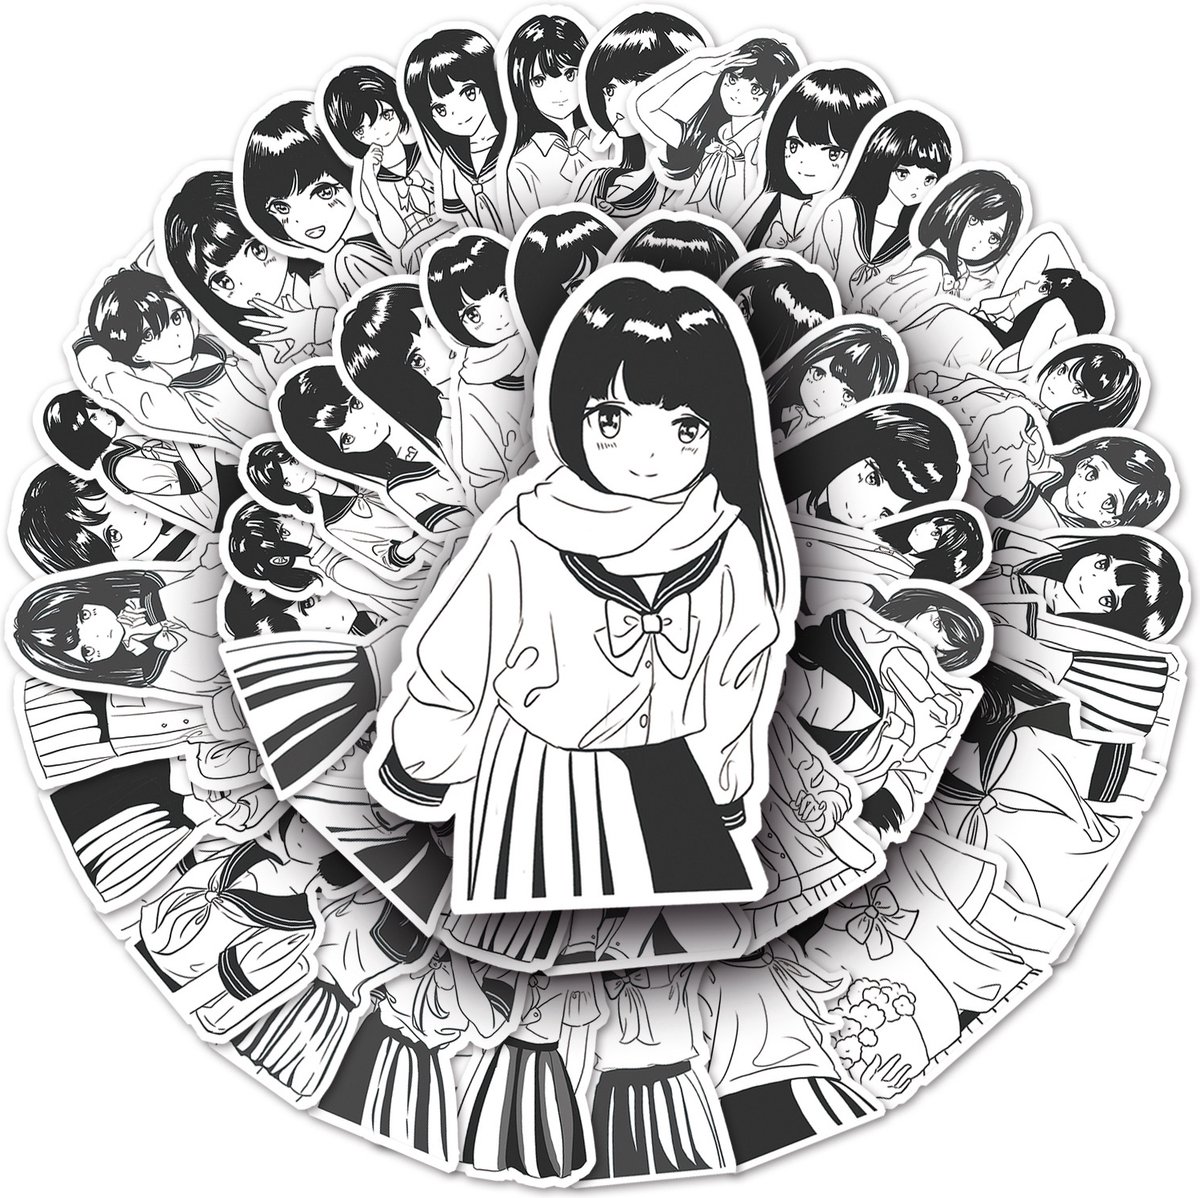 JK kostuum Stickers - 50 zwart/wit stickers met Japanse meisjes in schoolkostuum fashion - Anime - Winkrs